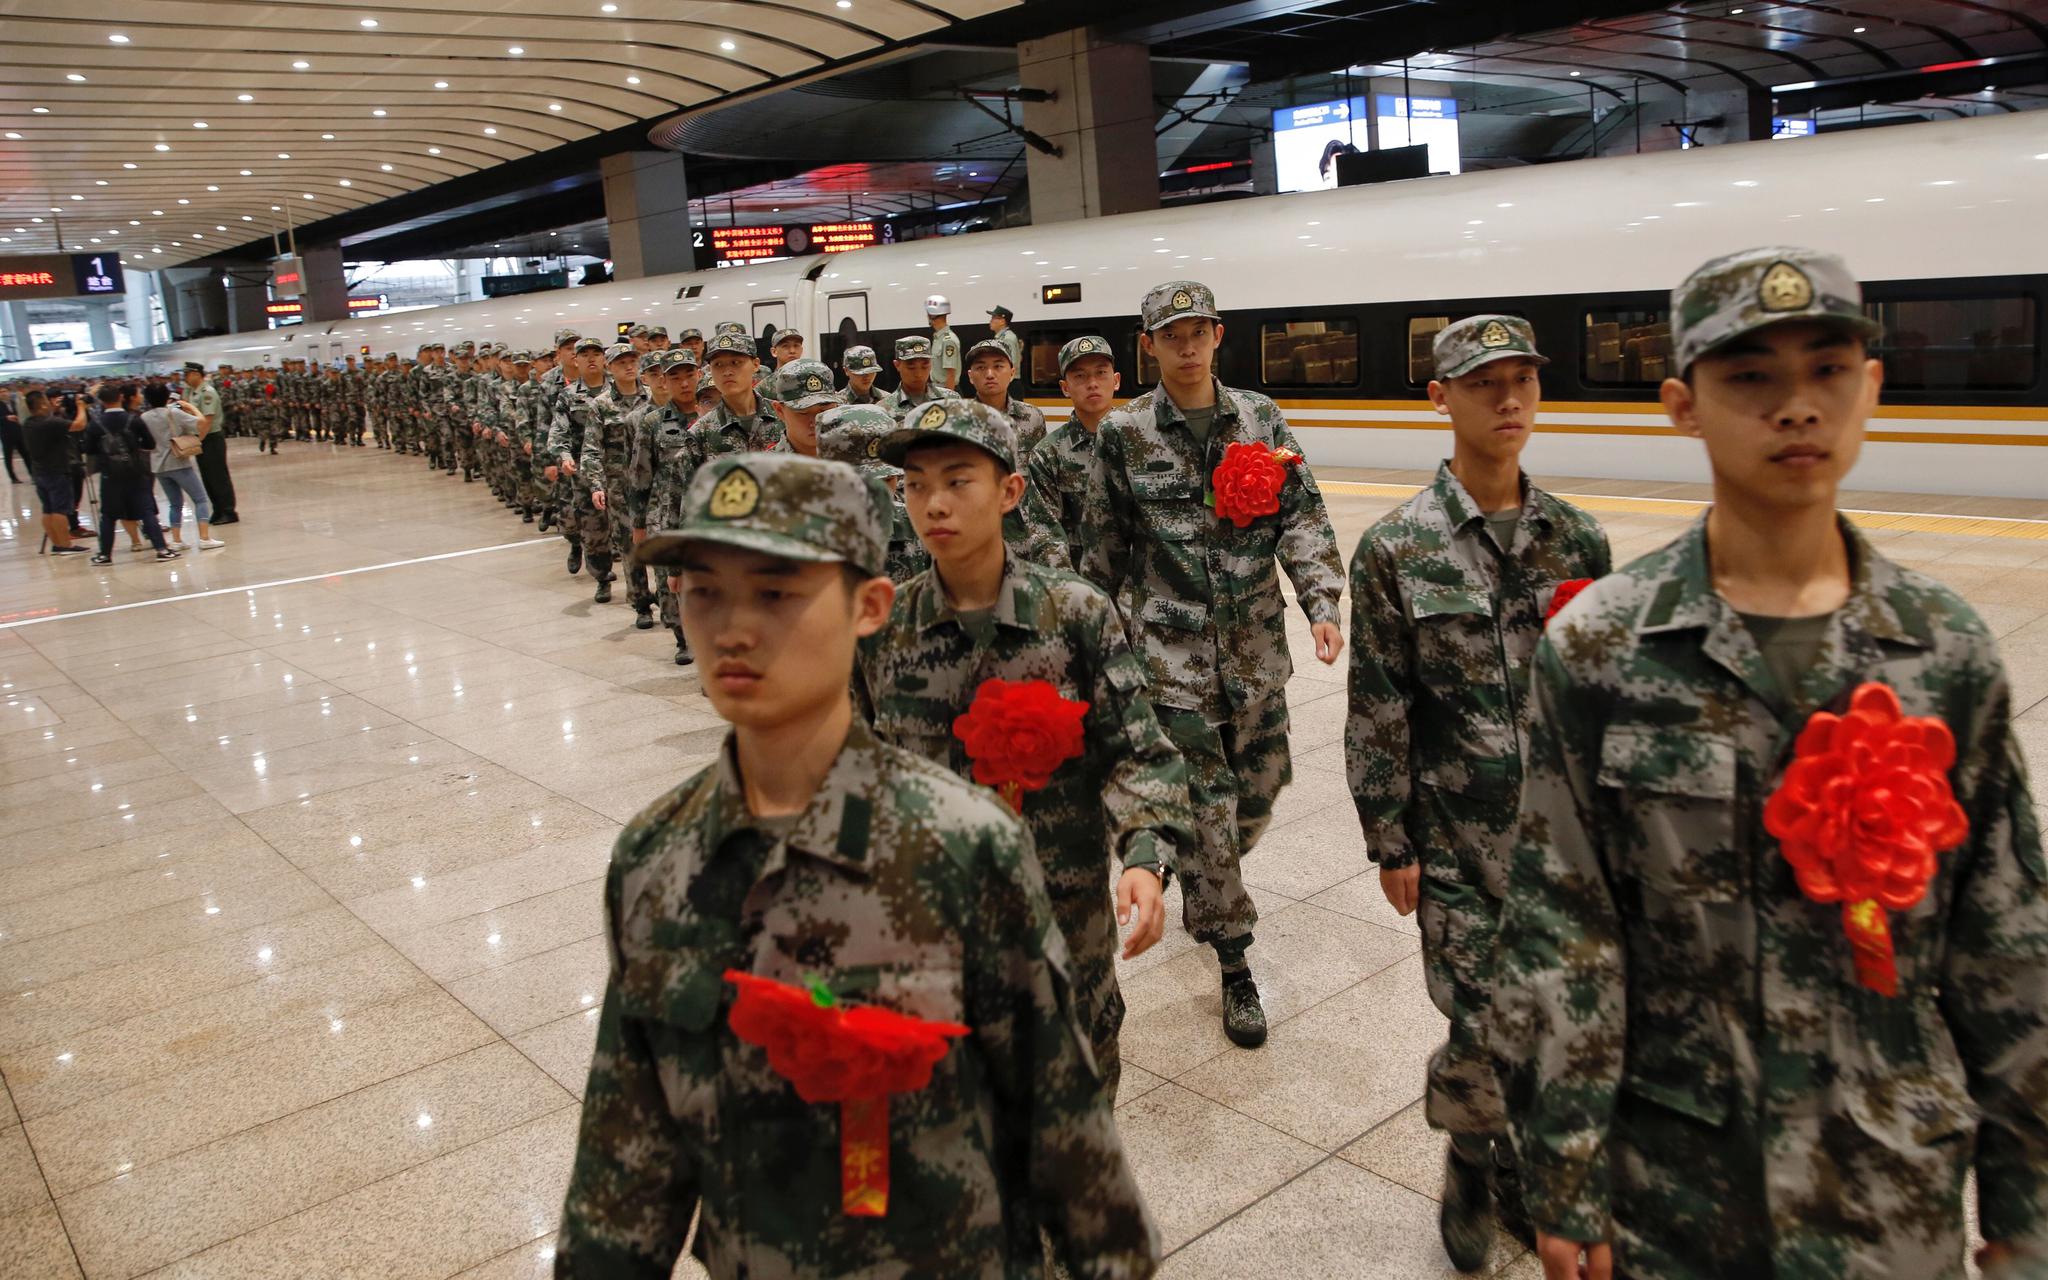 揭秘丨如何成为一名合格的特战队员 - 中国军网